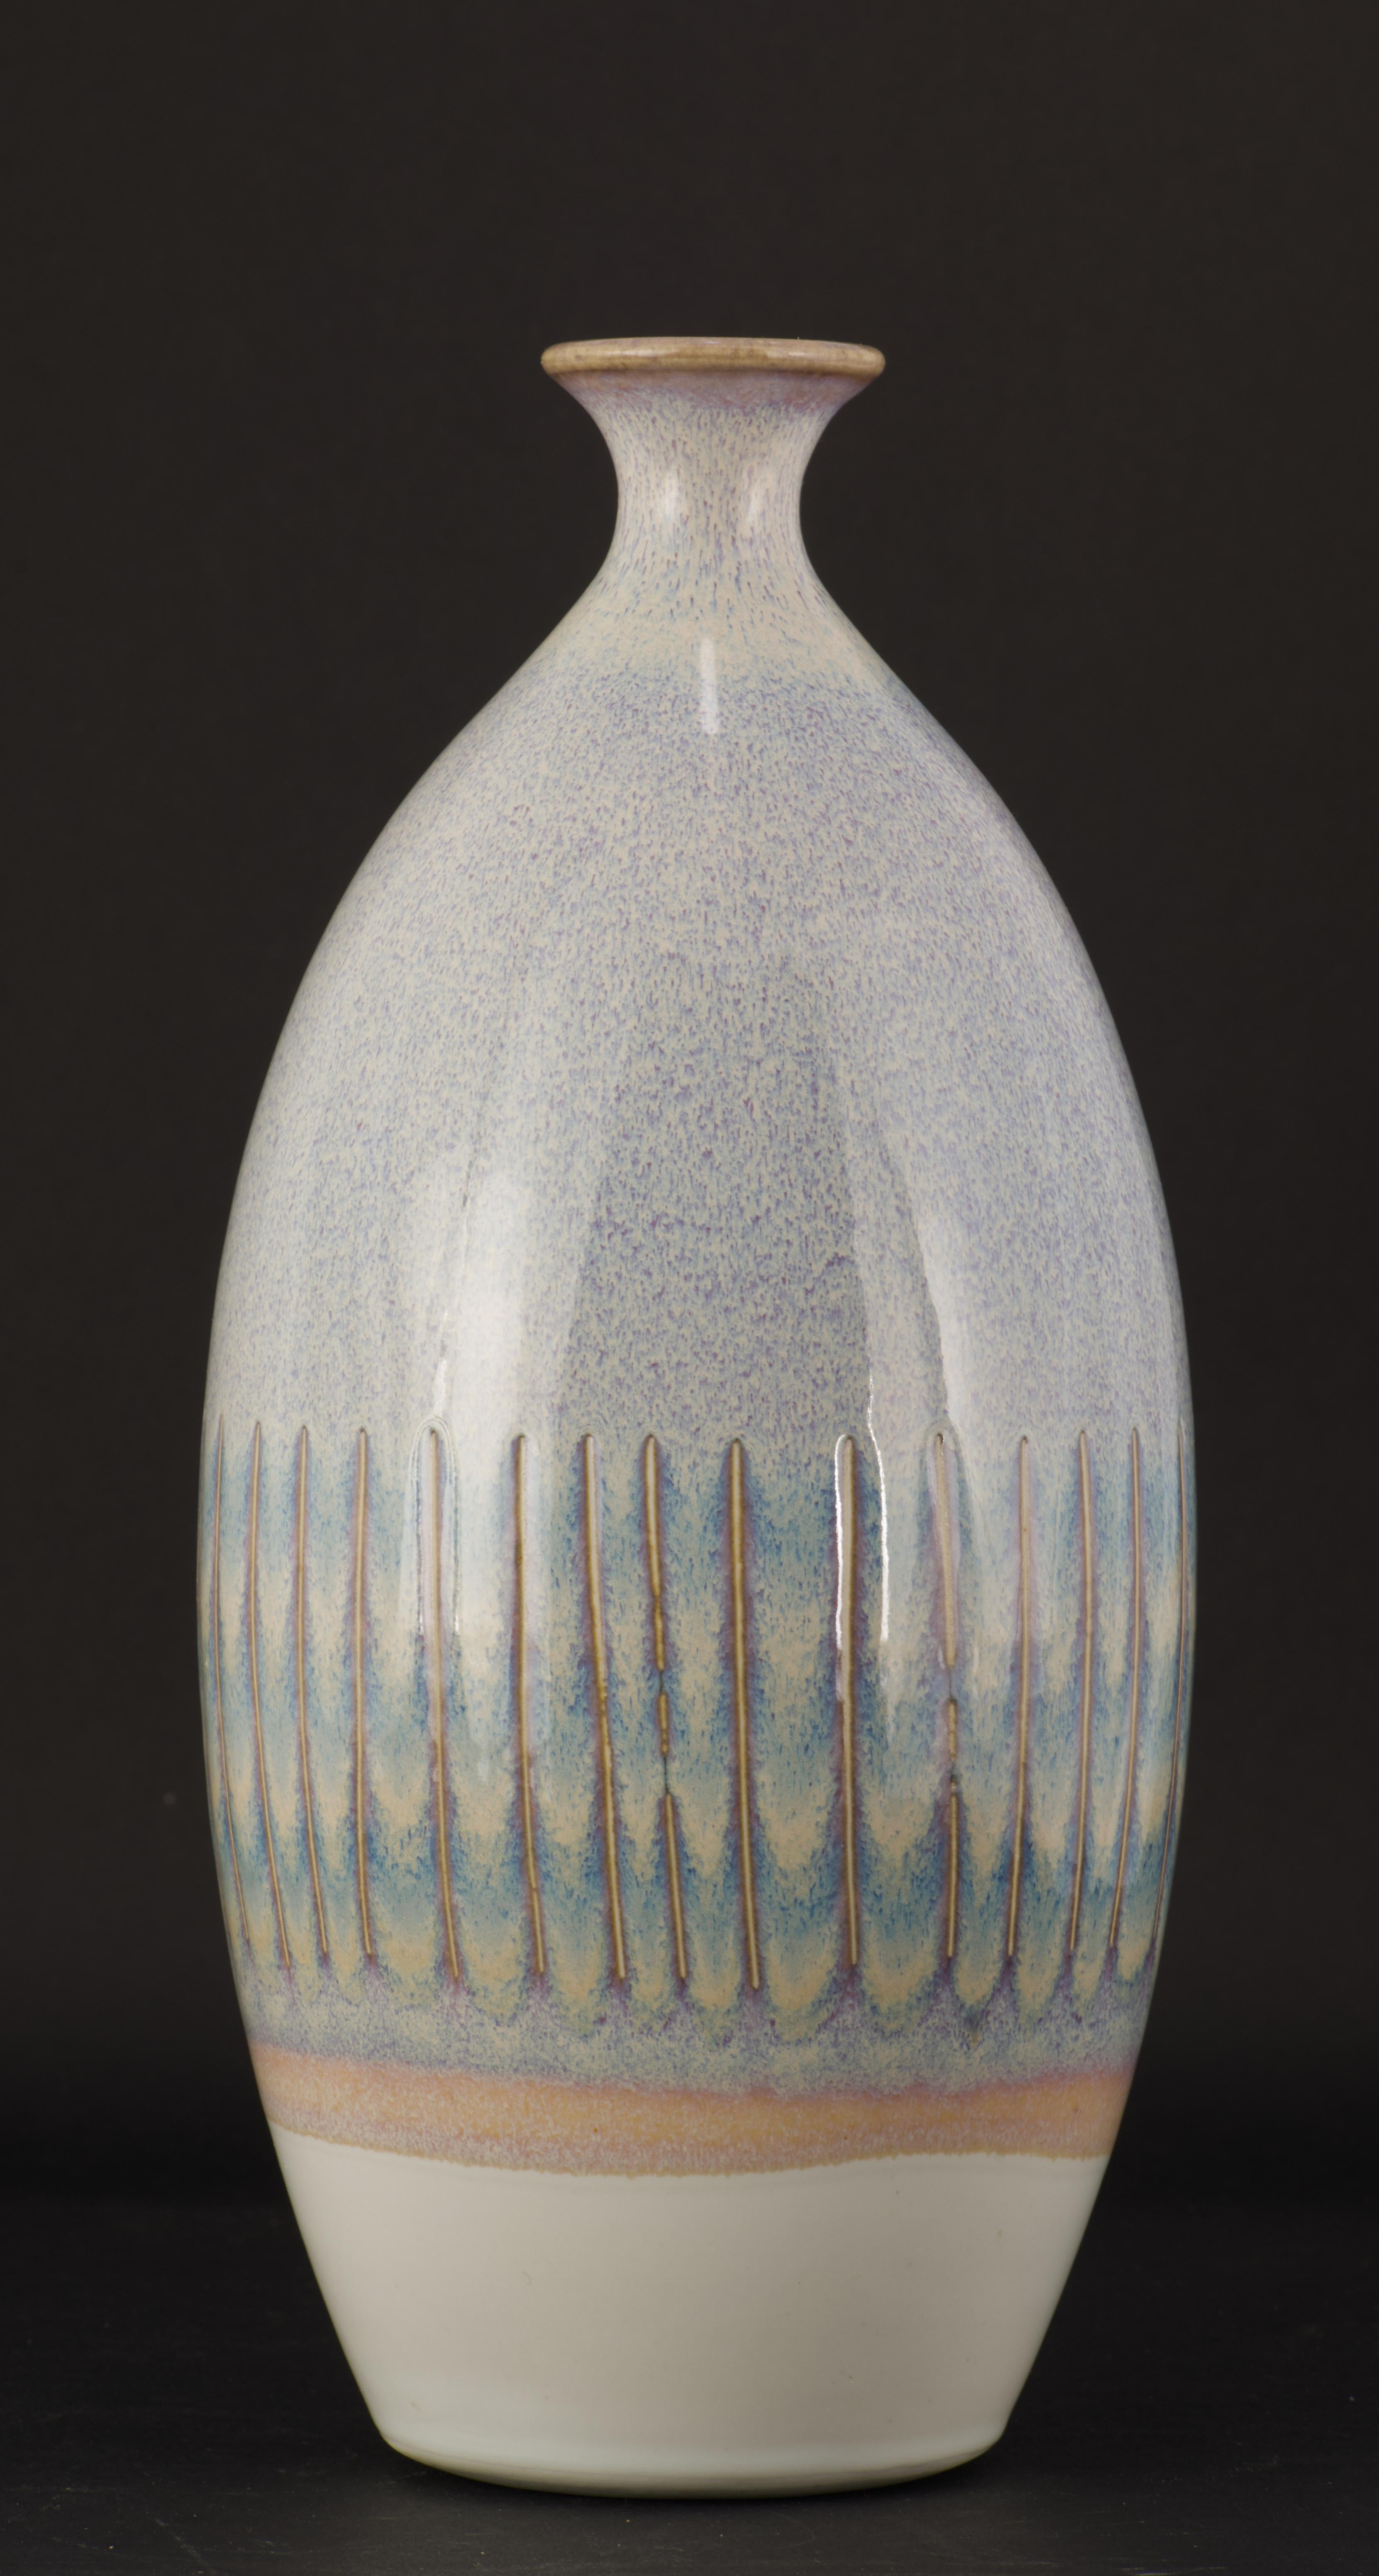  Vintage Studio Keramik Vase in runder, bauchiger Form ist handgedreht und mit abstraktem, fließendem Ritzmuster verziert. Die Glasur in gedämpften Orange- und Olivtönen mit dunkelgrauen Sprenkeln unterstreicht die organische, erdige Stimmung des